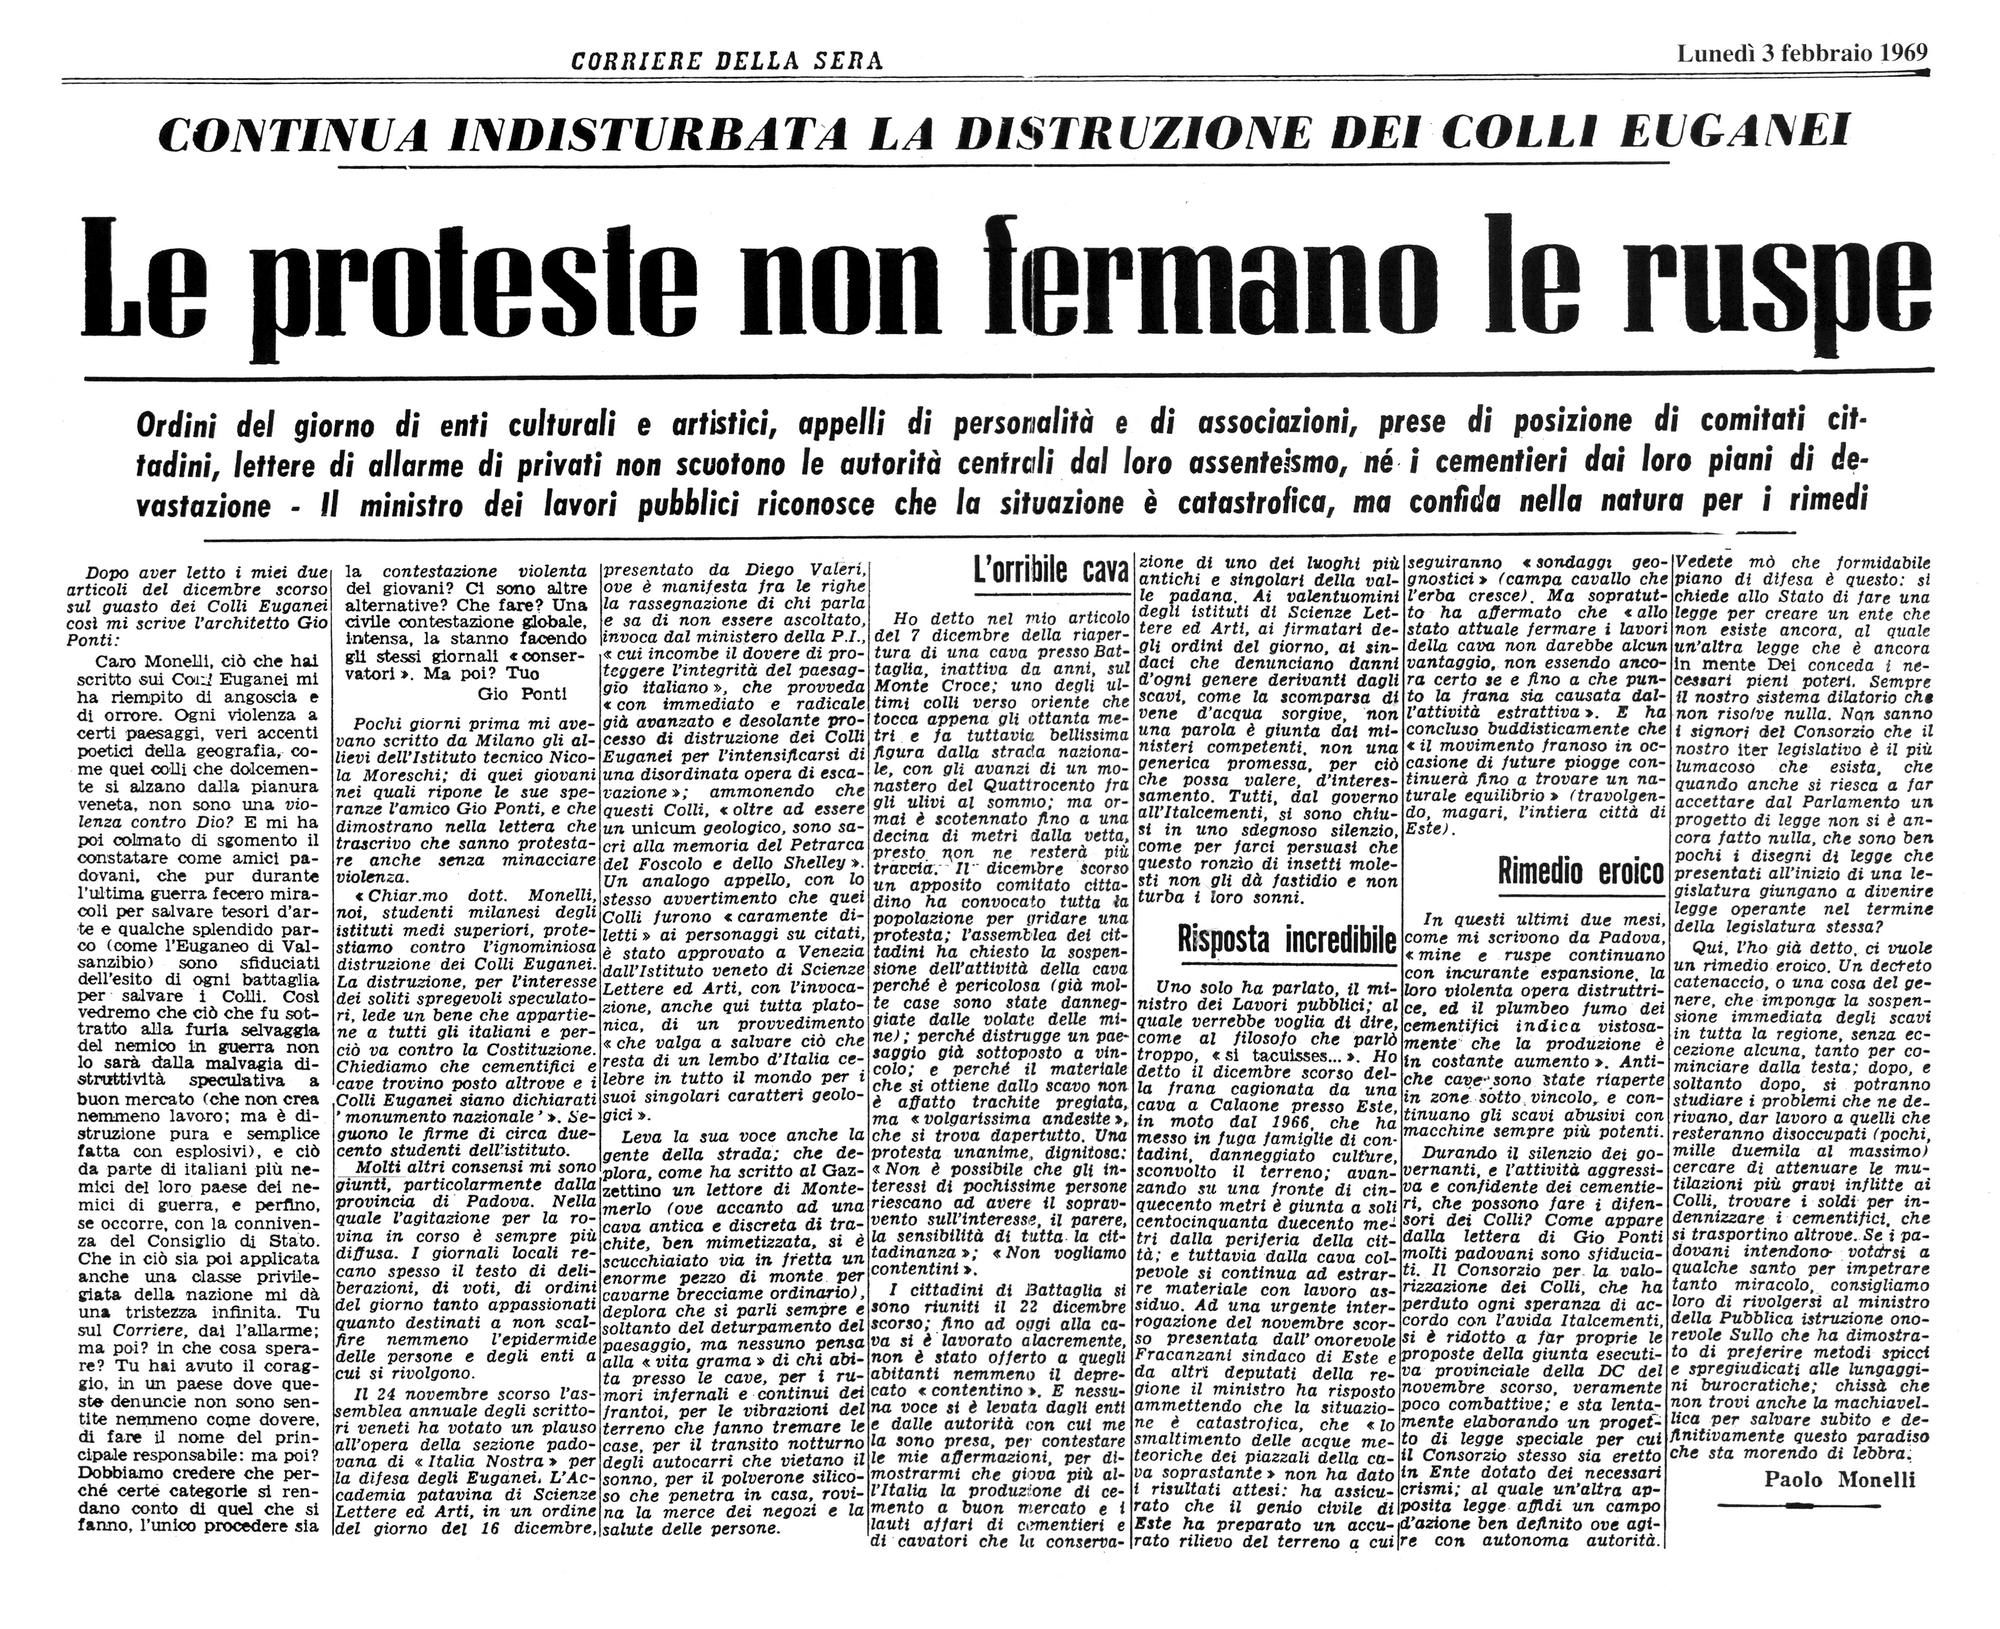 Le proteste non fermano le ruspe. Articolo del 3 febbraio 1969.